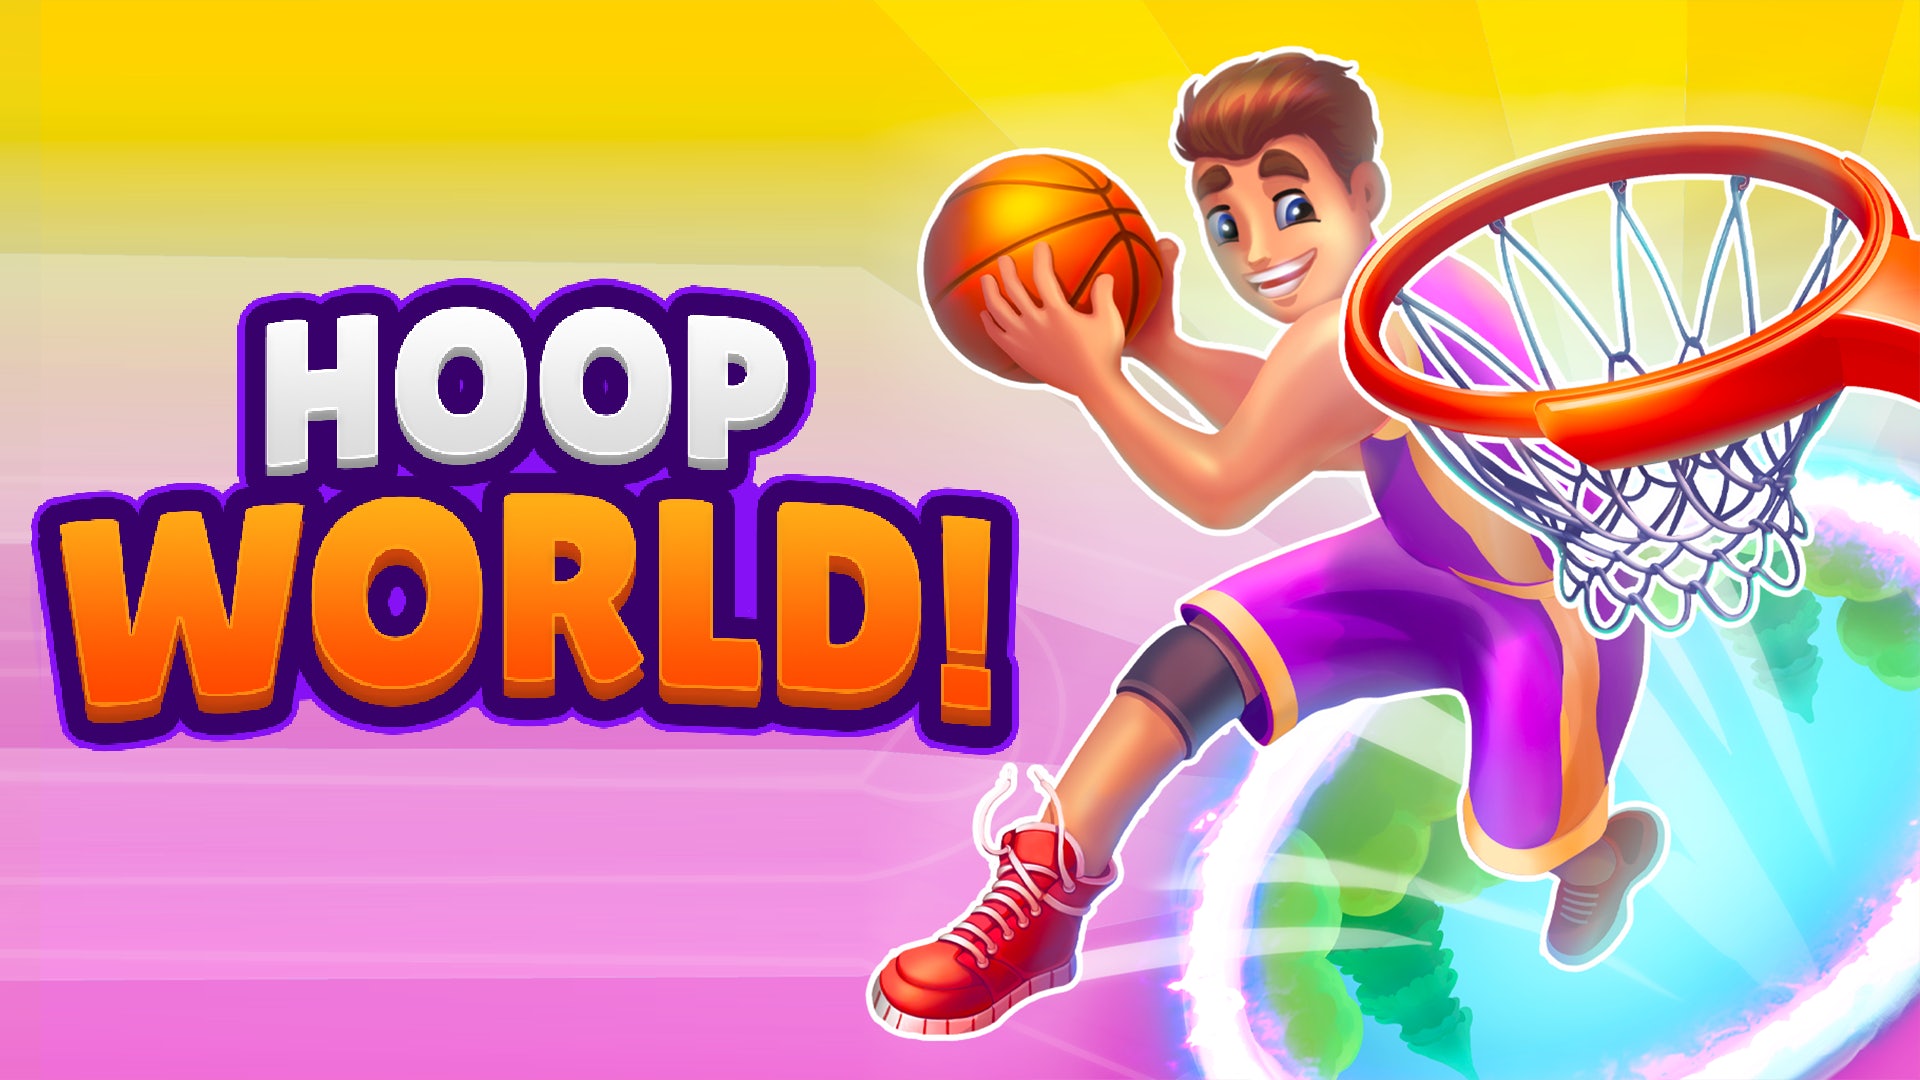 Hoop World 3D